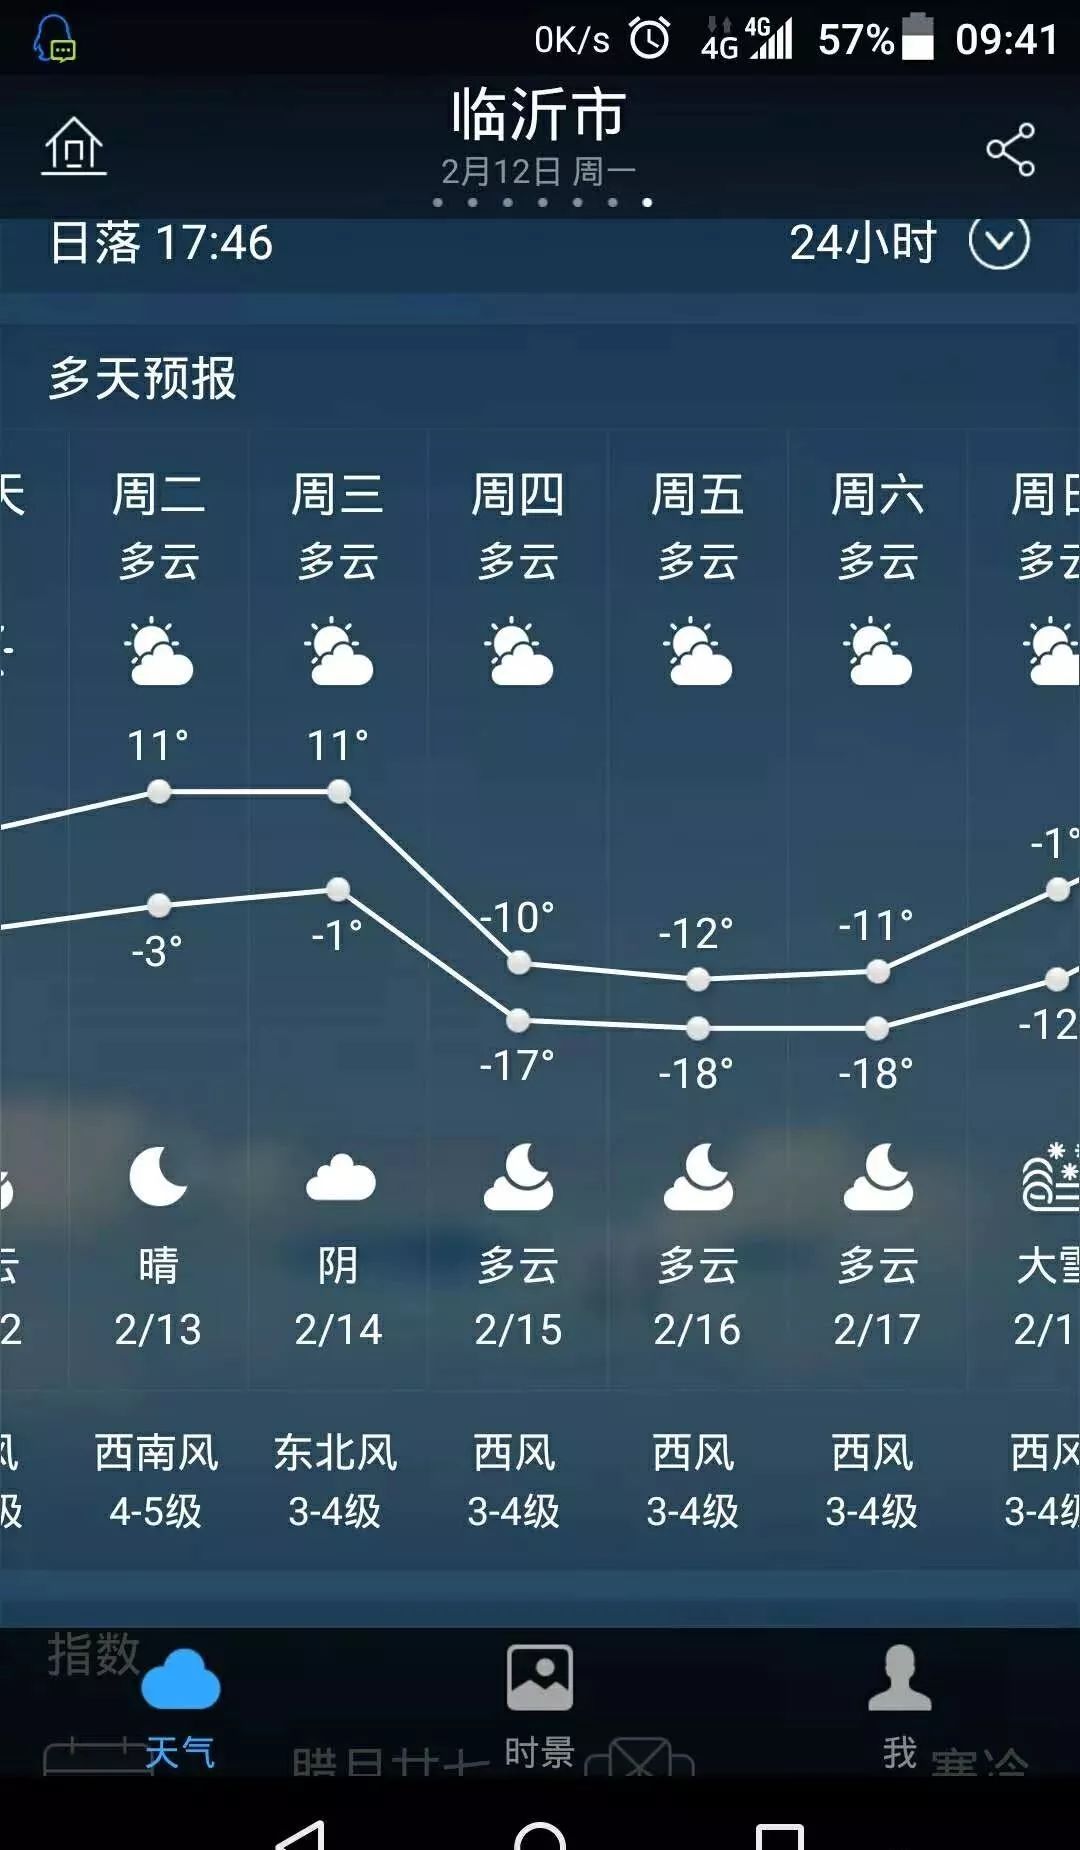 【淄博天气预报】淄博春节7天的天气疯了!将飙到30℃?真相是